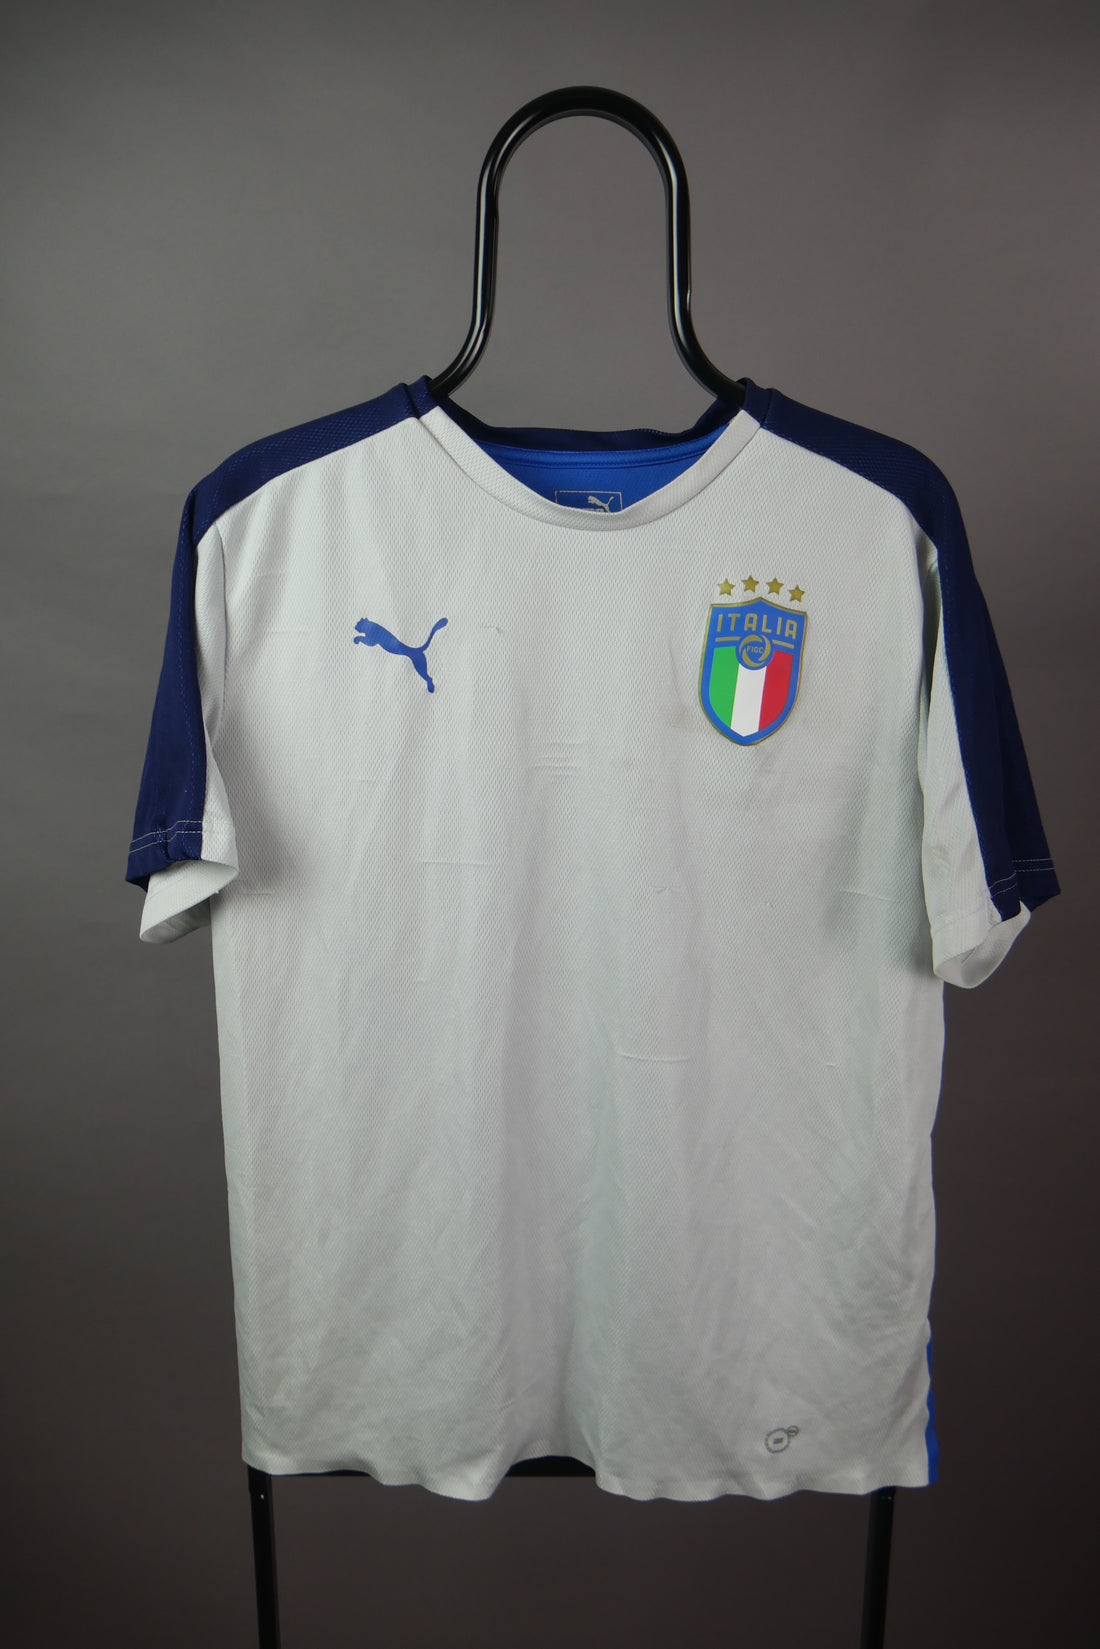 The Puma Italian Football Shirt (L)